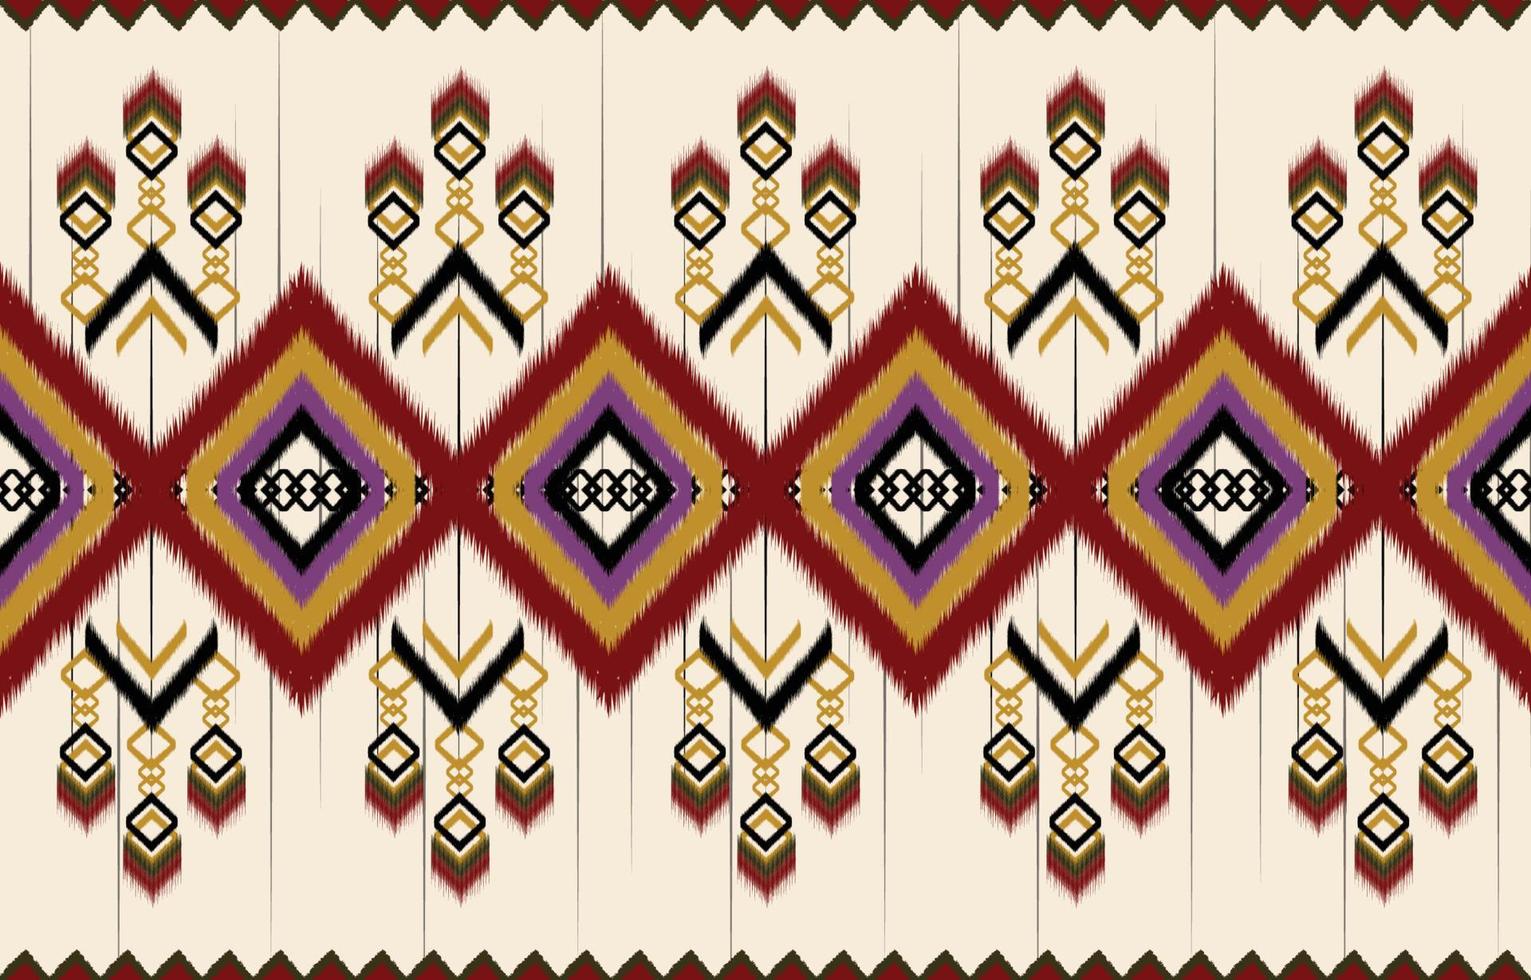 padrão ikat design.eethnic ikat padrão oriental afro-americano mexicano asteca motivo têxtil e vetor boêmio. design para plano de fundo, papel de parede, impressão de tapete, tecido, padrão batik .vector ikat.